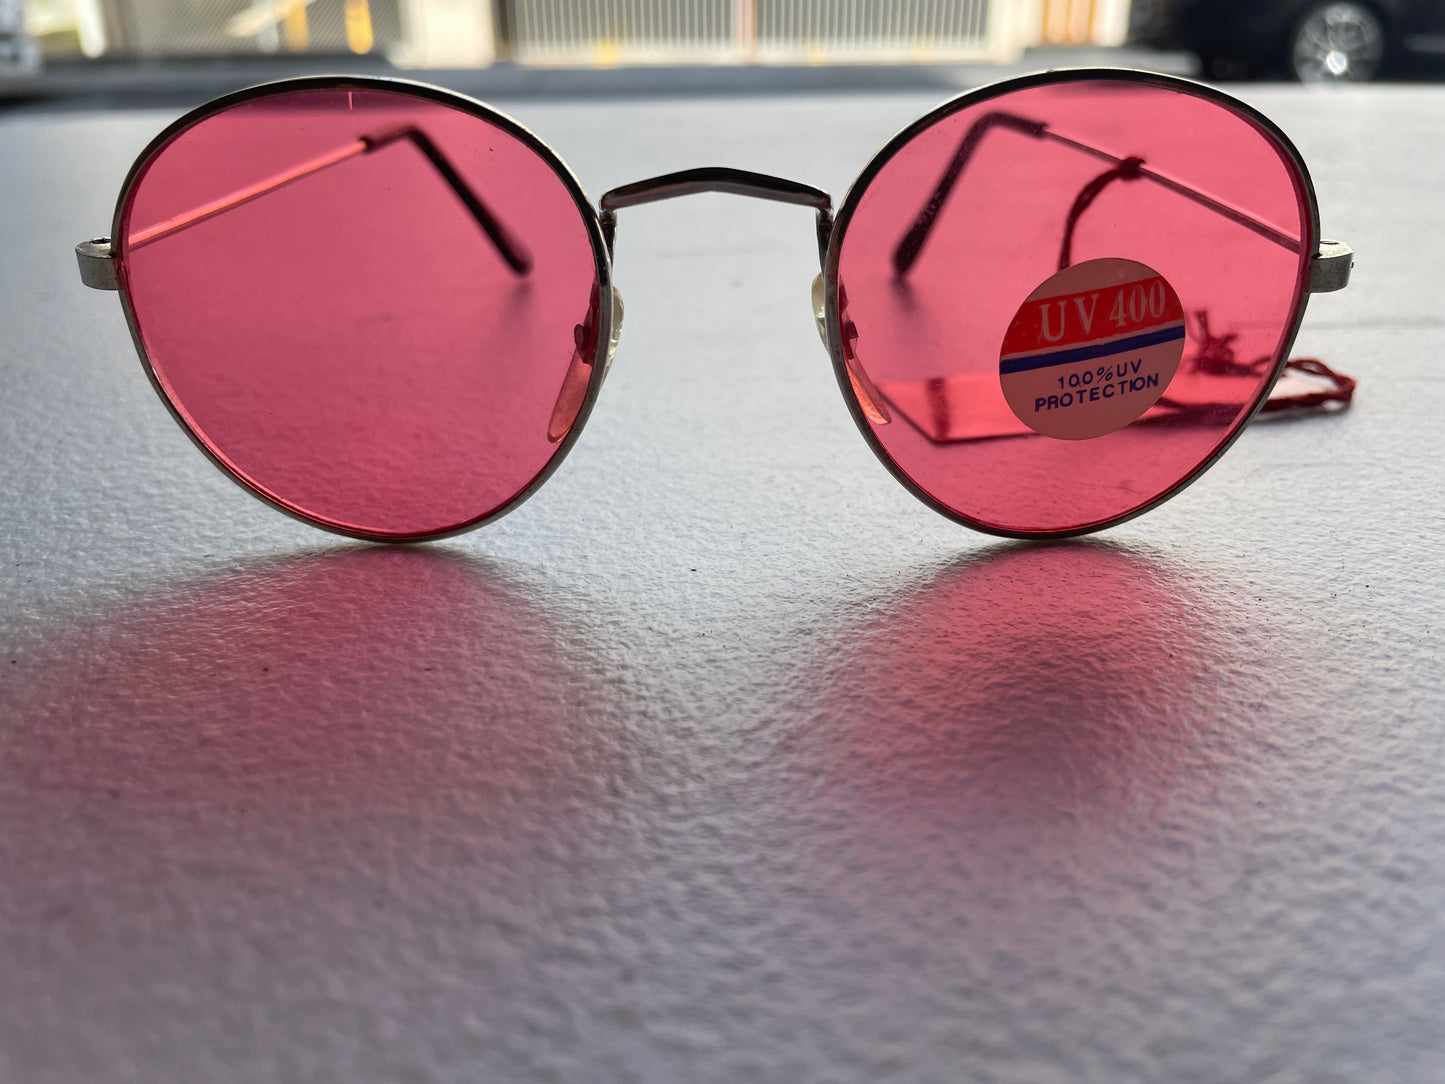 Vintage 90s Sunglassess Festival Glasses Pink Lenses